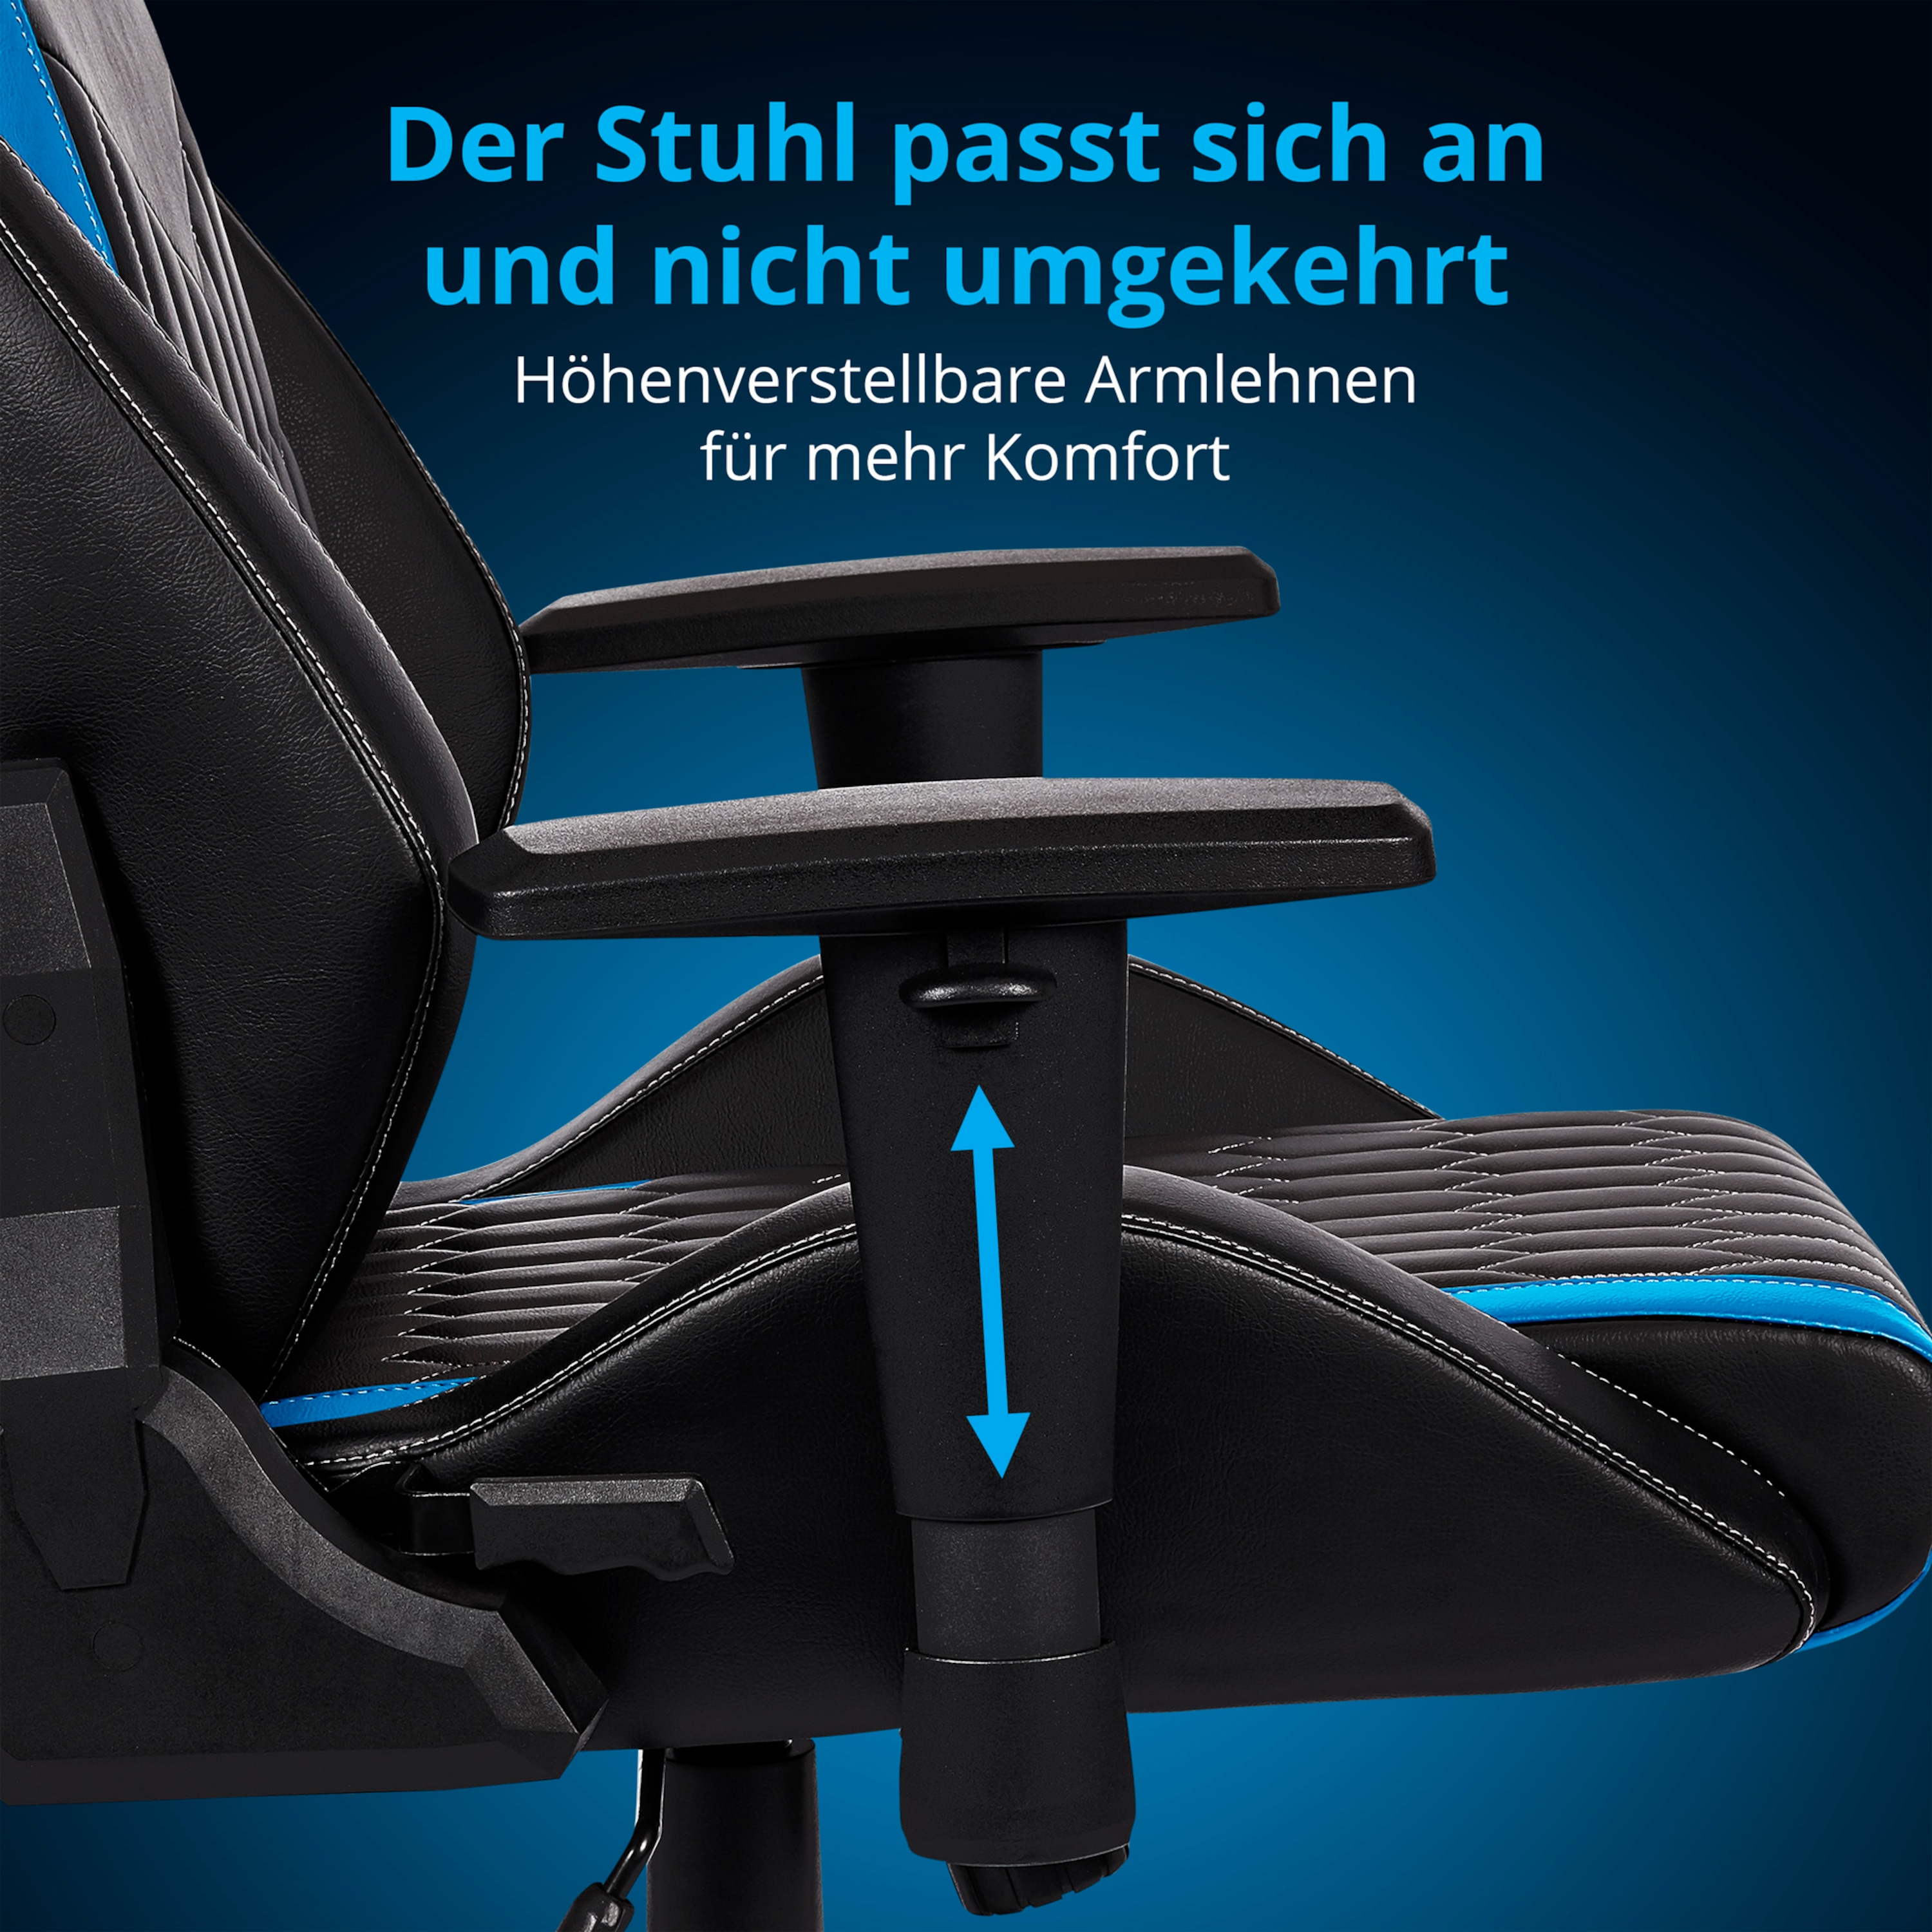 MEDION® ERAZER® Druid P10, Gaming Stuhl mit hohem Sitzkomfort, sportlichen Look, hochwertige Materialien & ergonomisch unterstütze Sitzposition